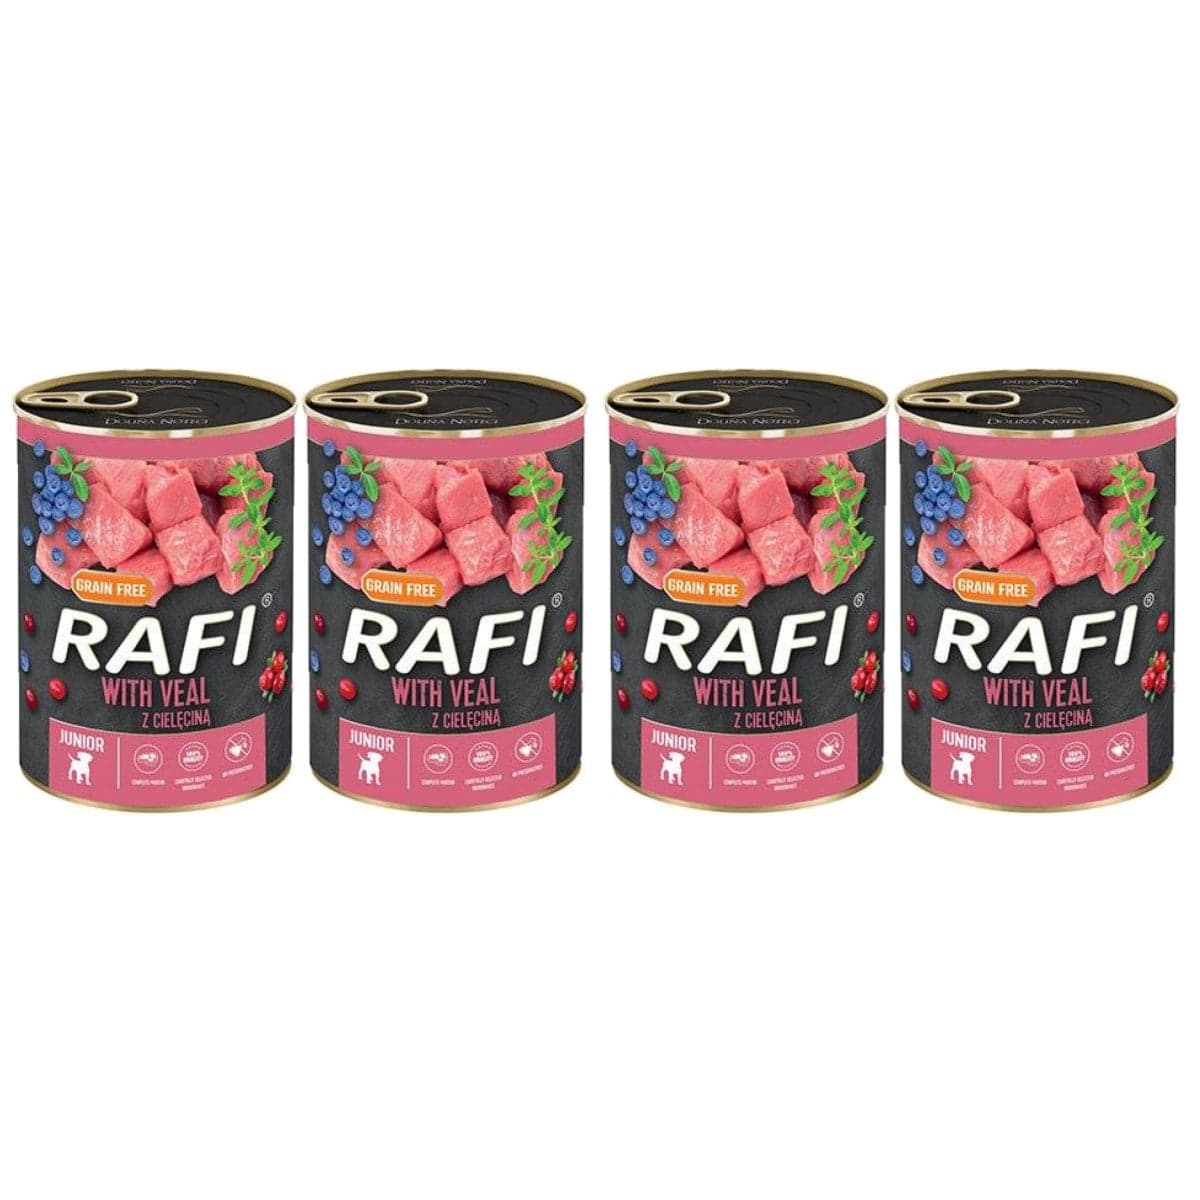 Produkt RAFI Mokra karma dla psa 4x Rafi pasztet junior z cielęciną, żurawiną i borówką 400G K_S00280_4